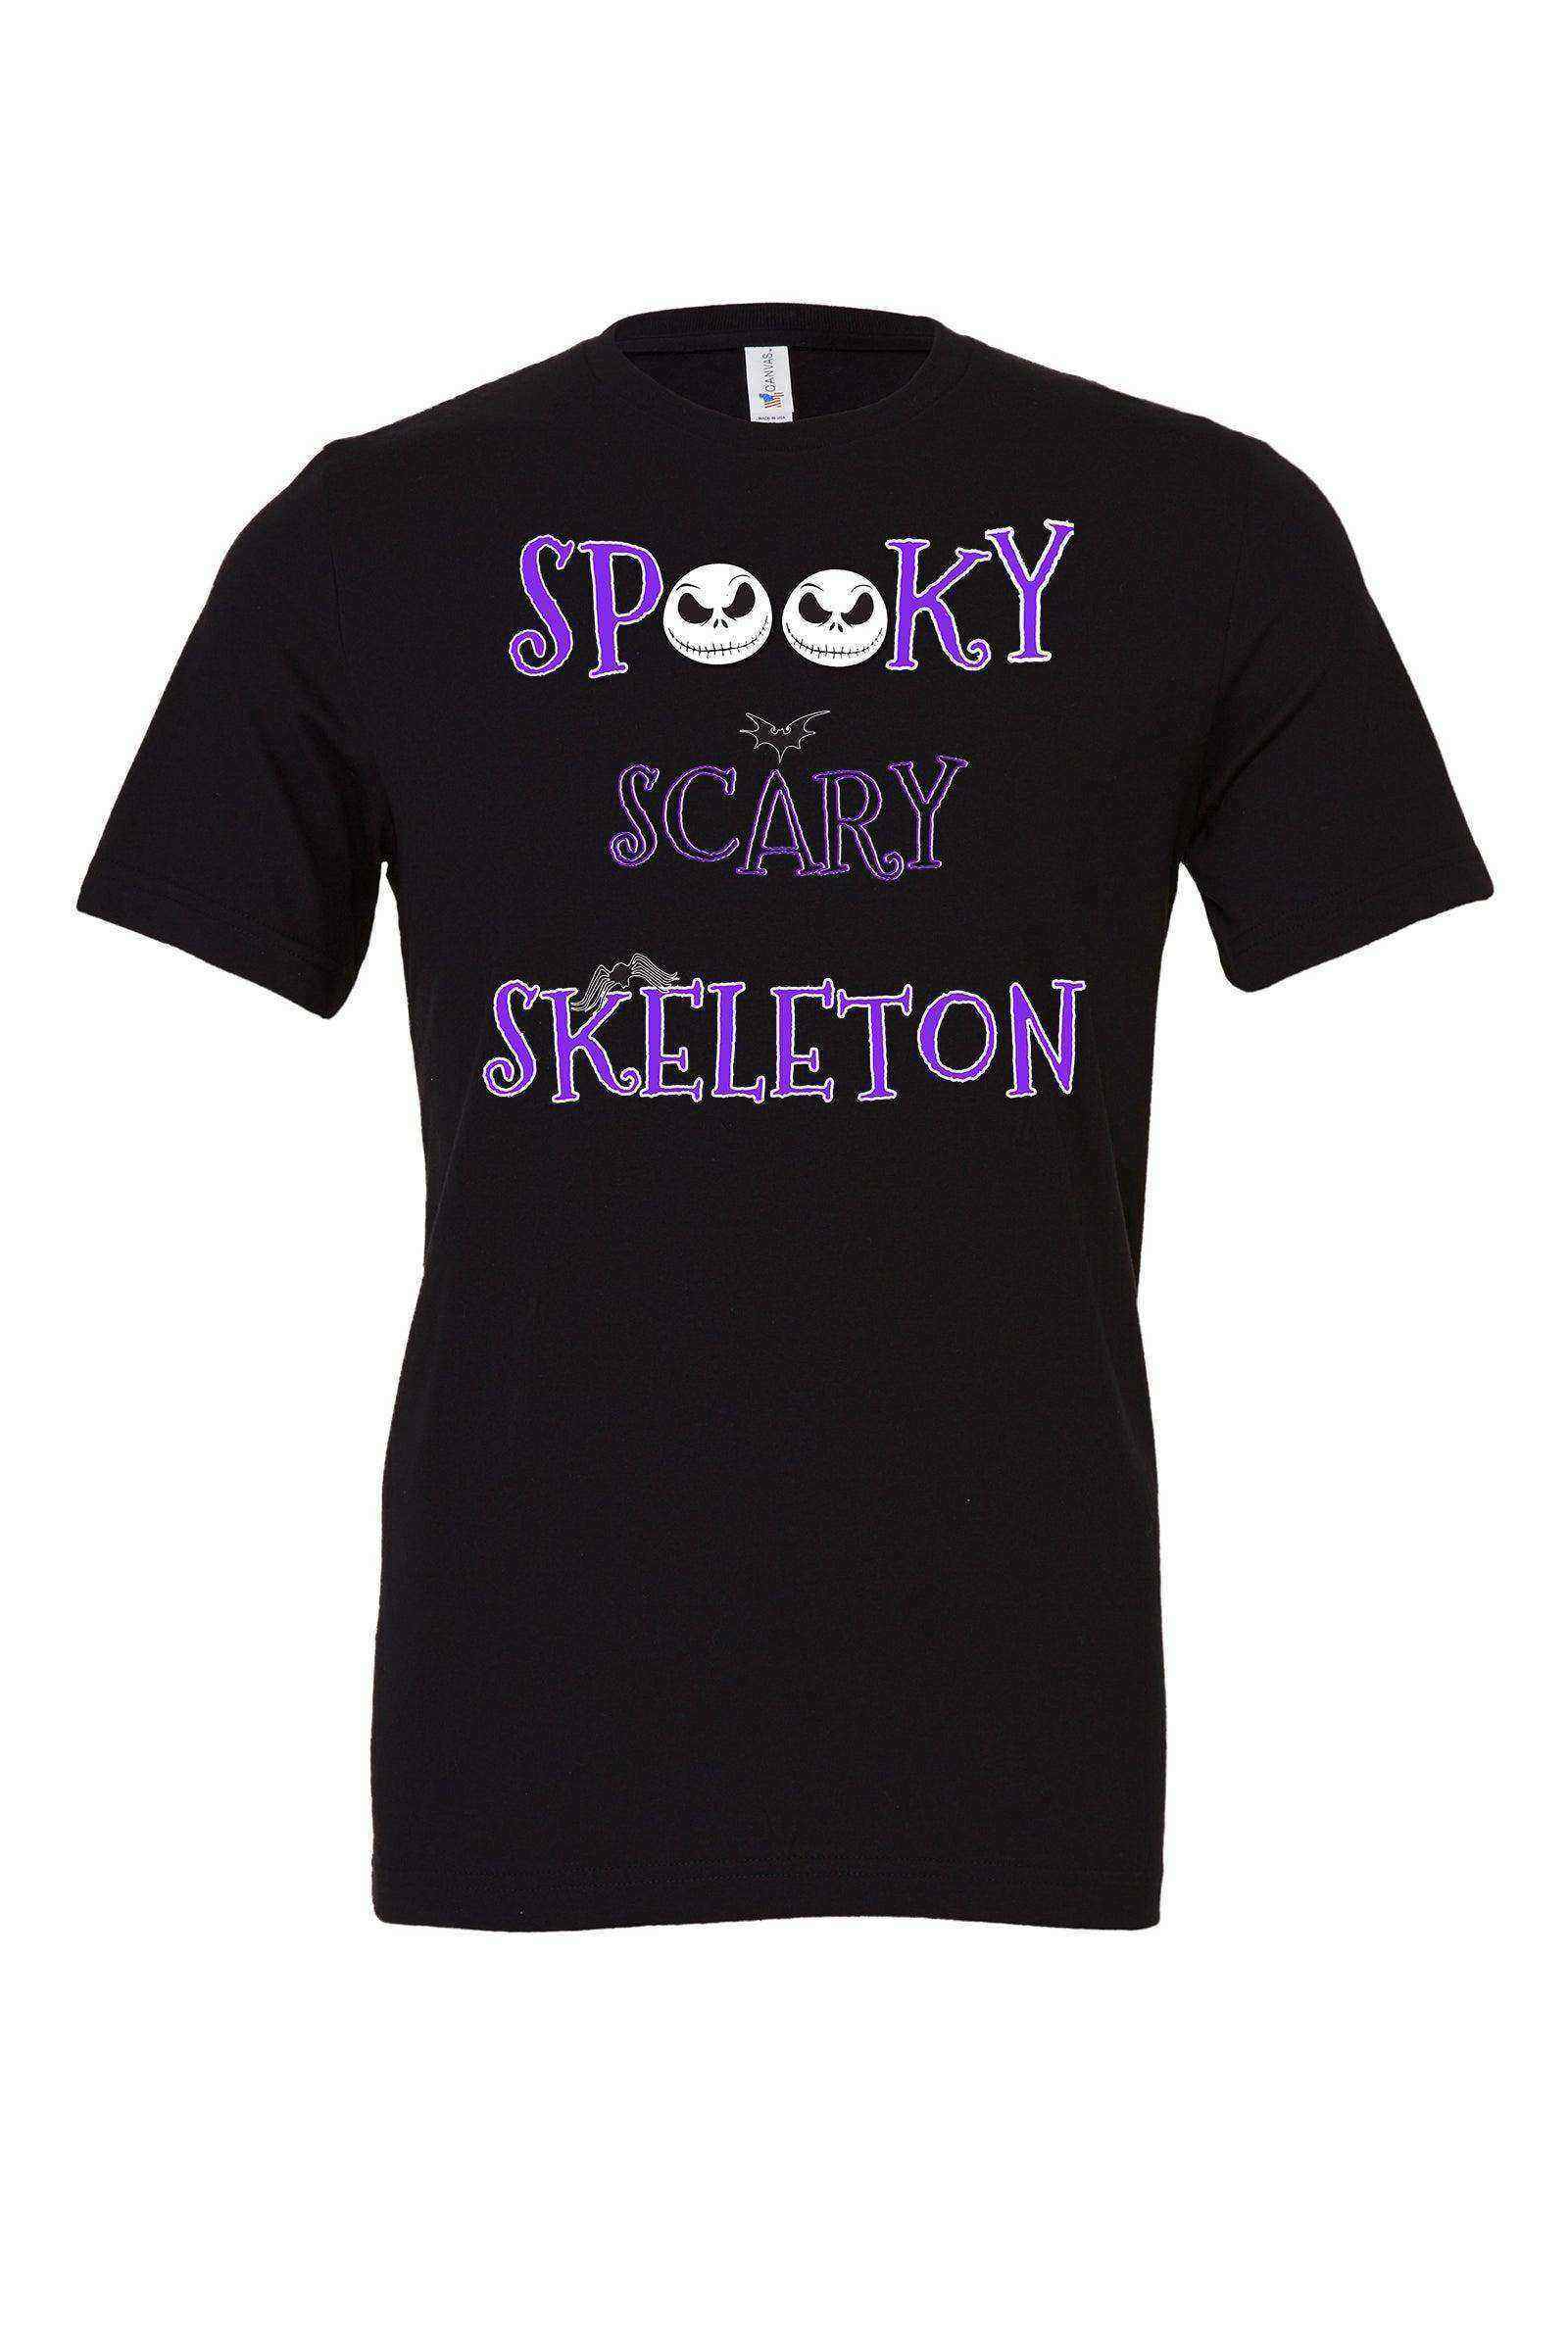 Spooky Scary Skeleton Shirt | Jack Skellington | Nightmare Before Christmas - Dylan's Tees